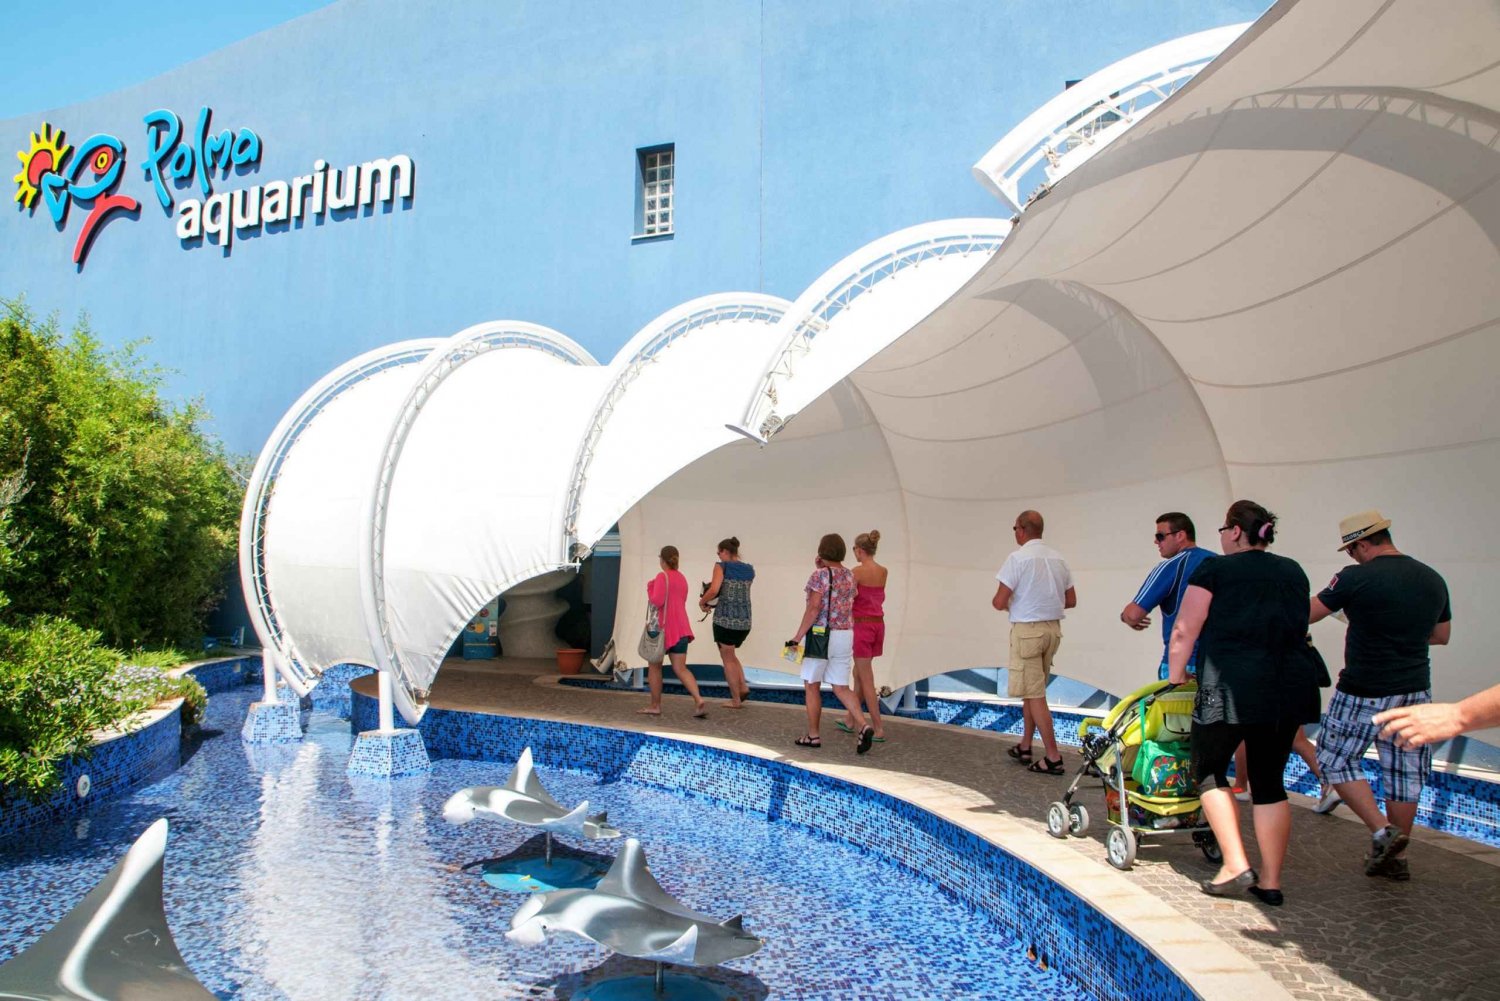 Mallorca: Palma Aquarium Ticket & optional Aquadome Ticket